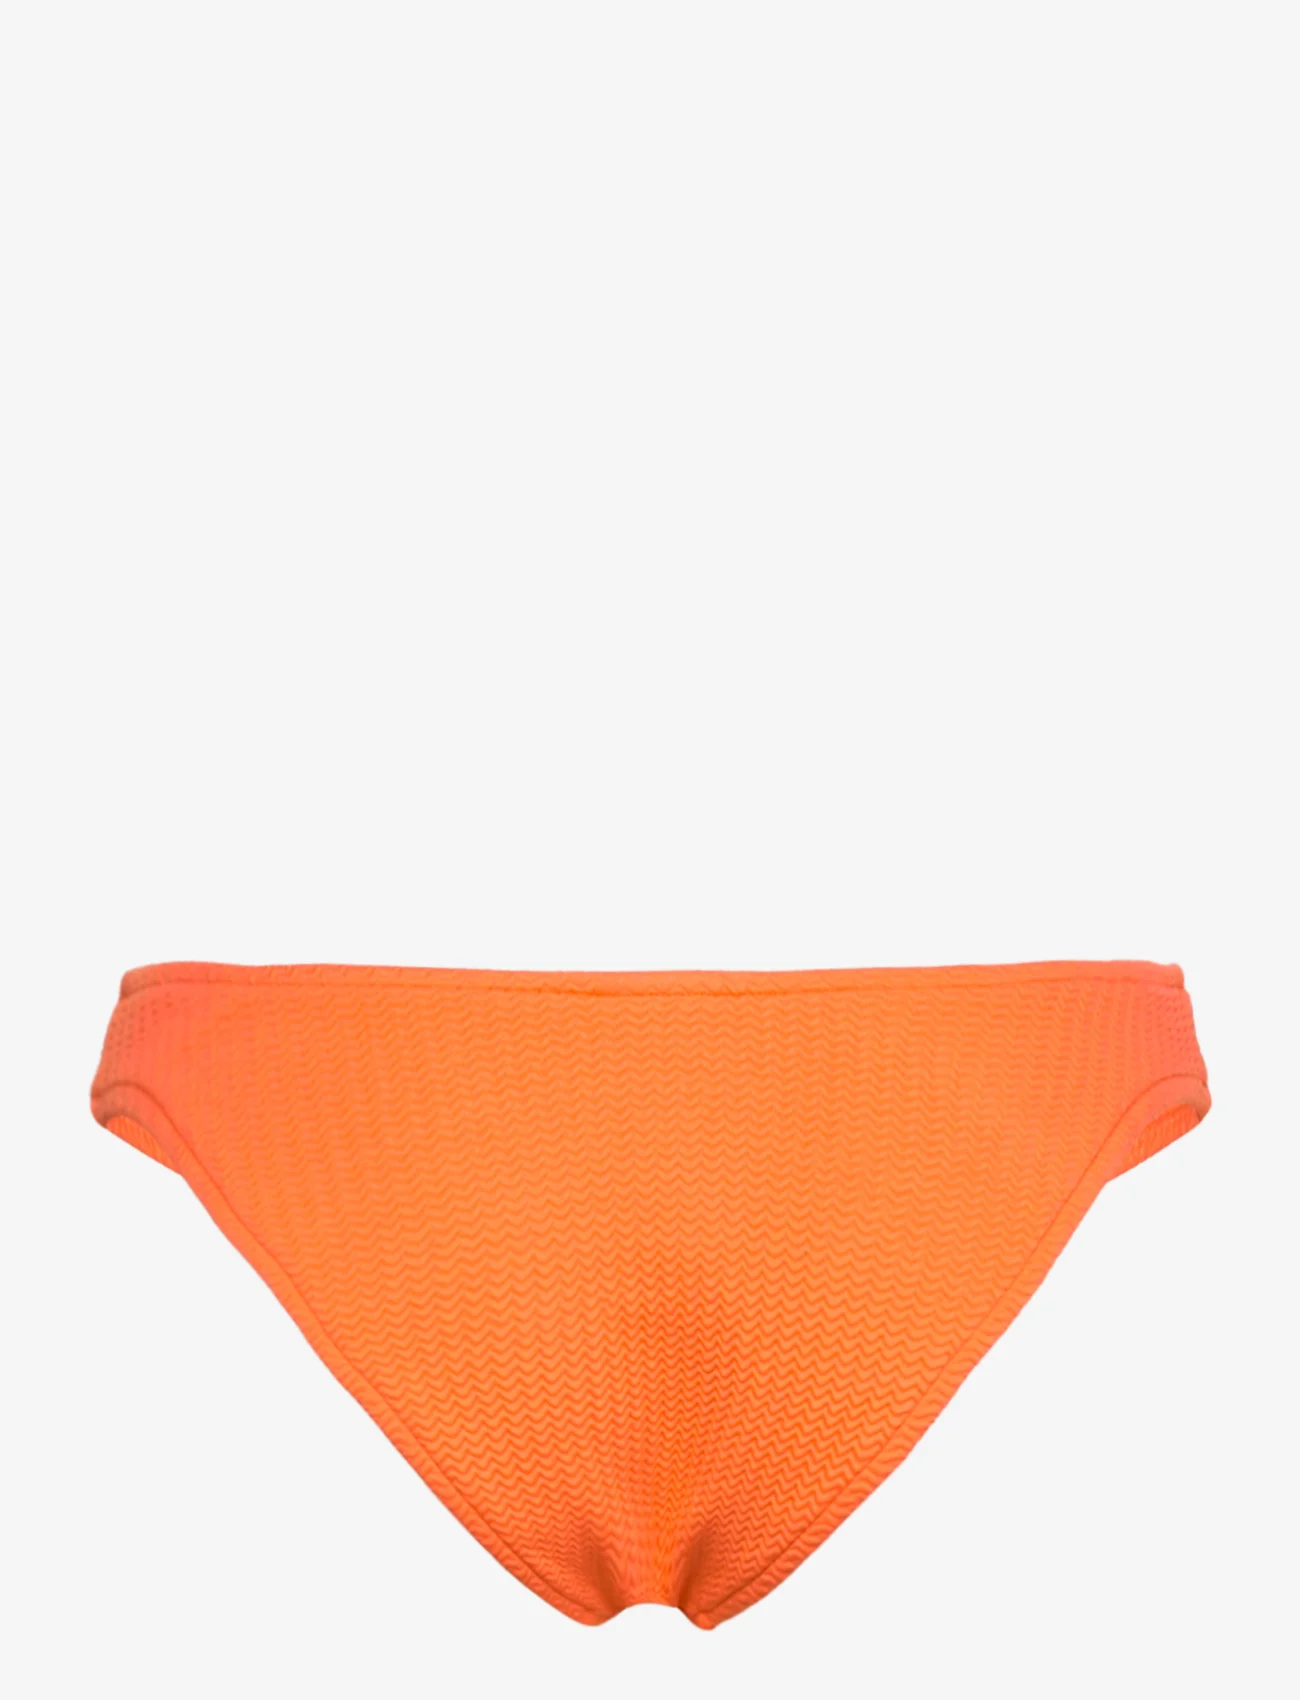 Seafolly - SeaDive High Cut Pant - bikini truser - mandarin - 1